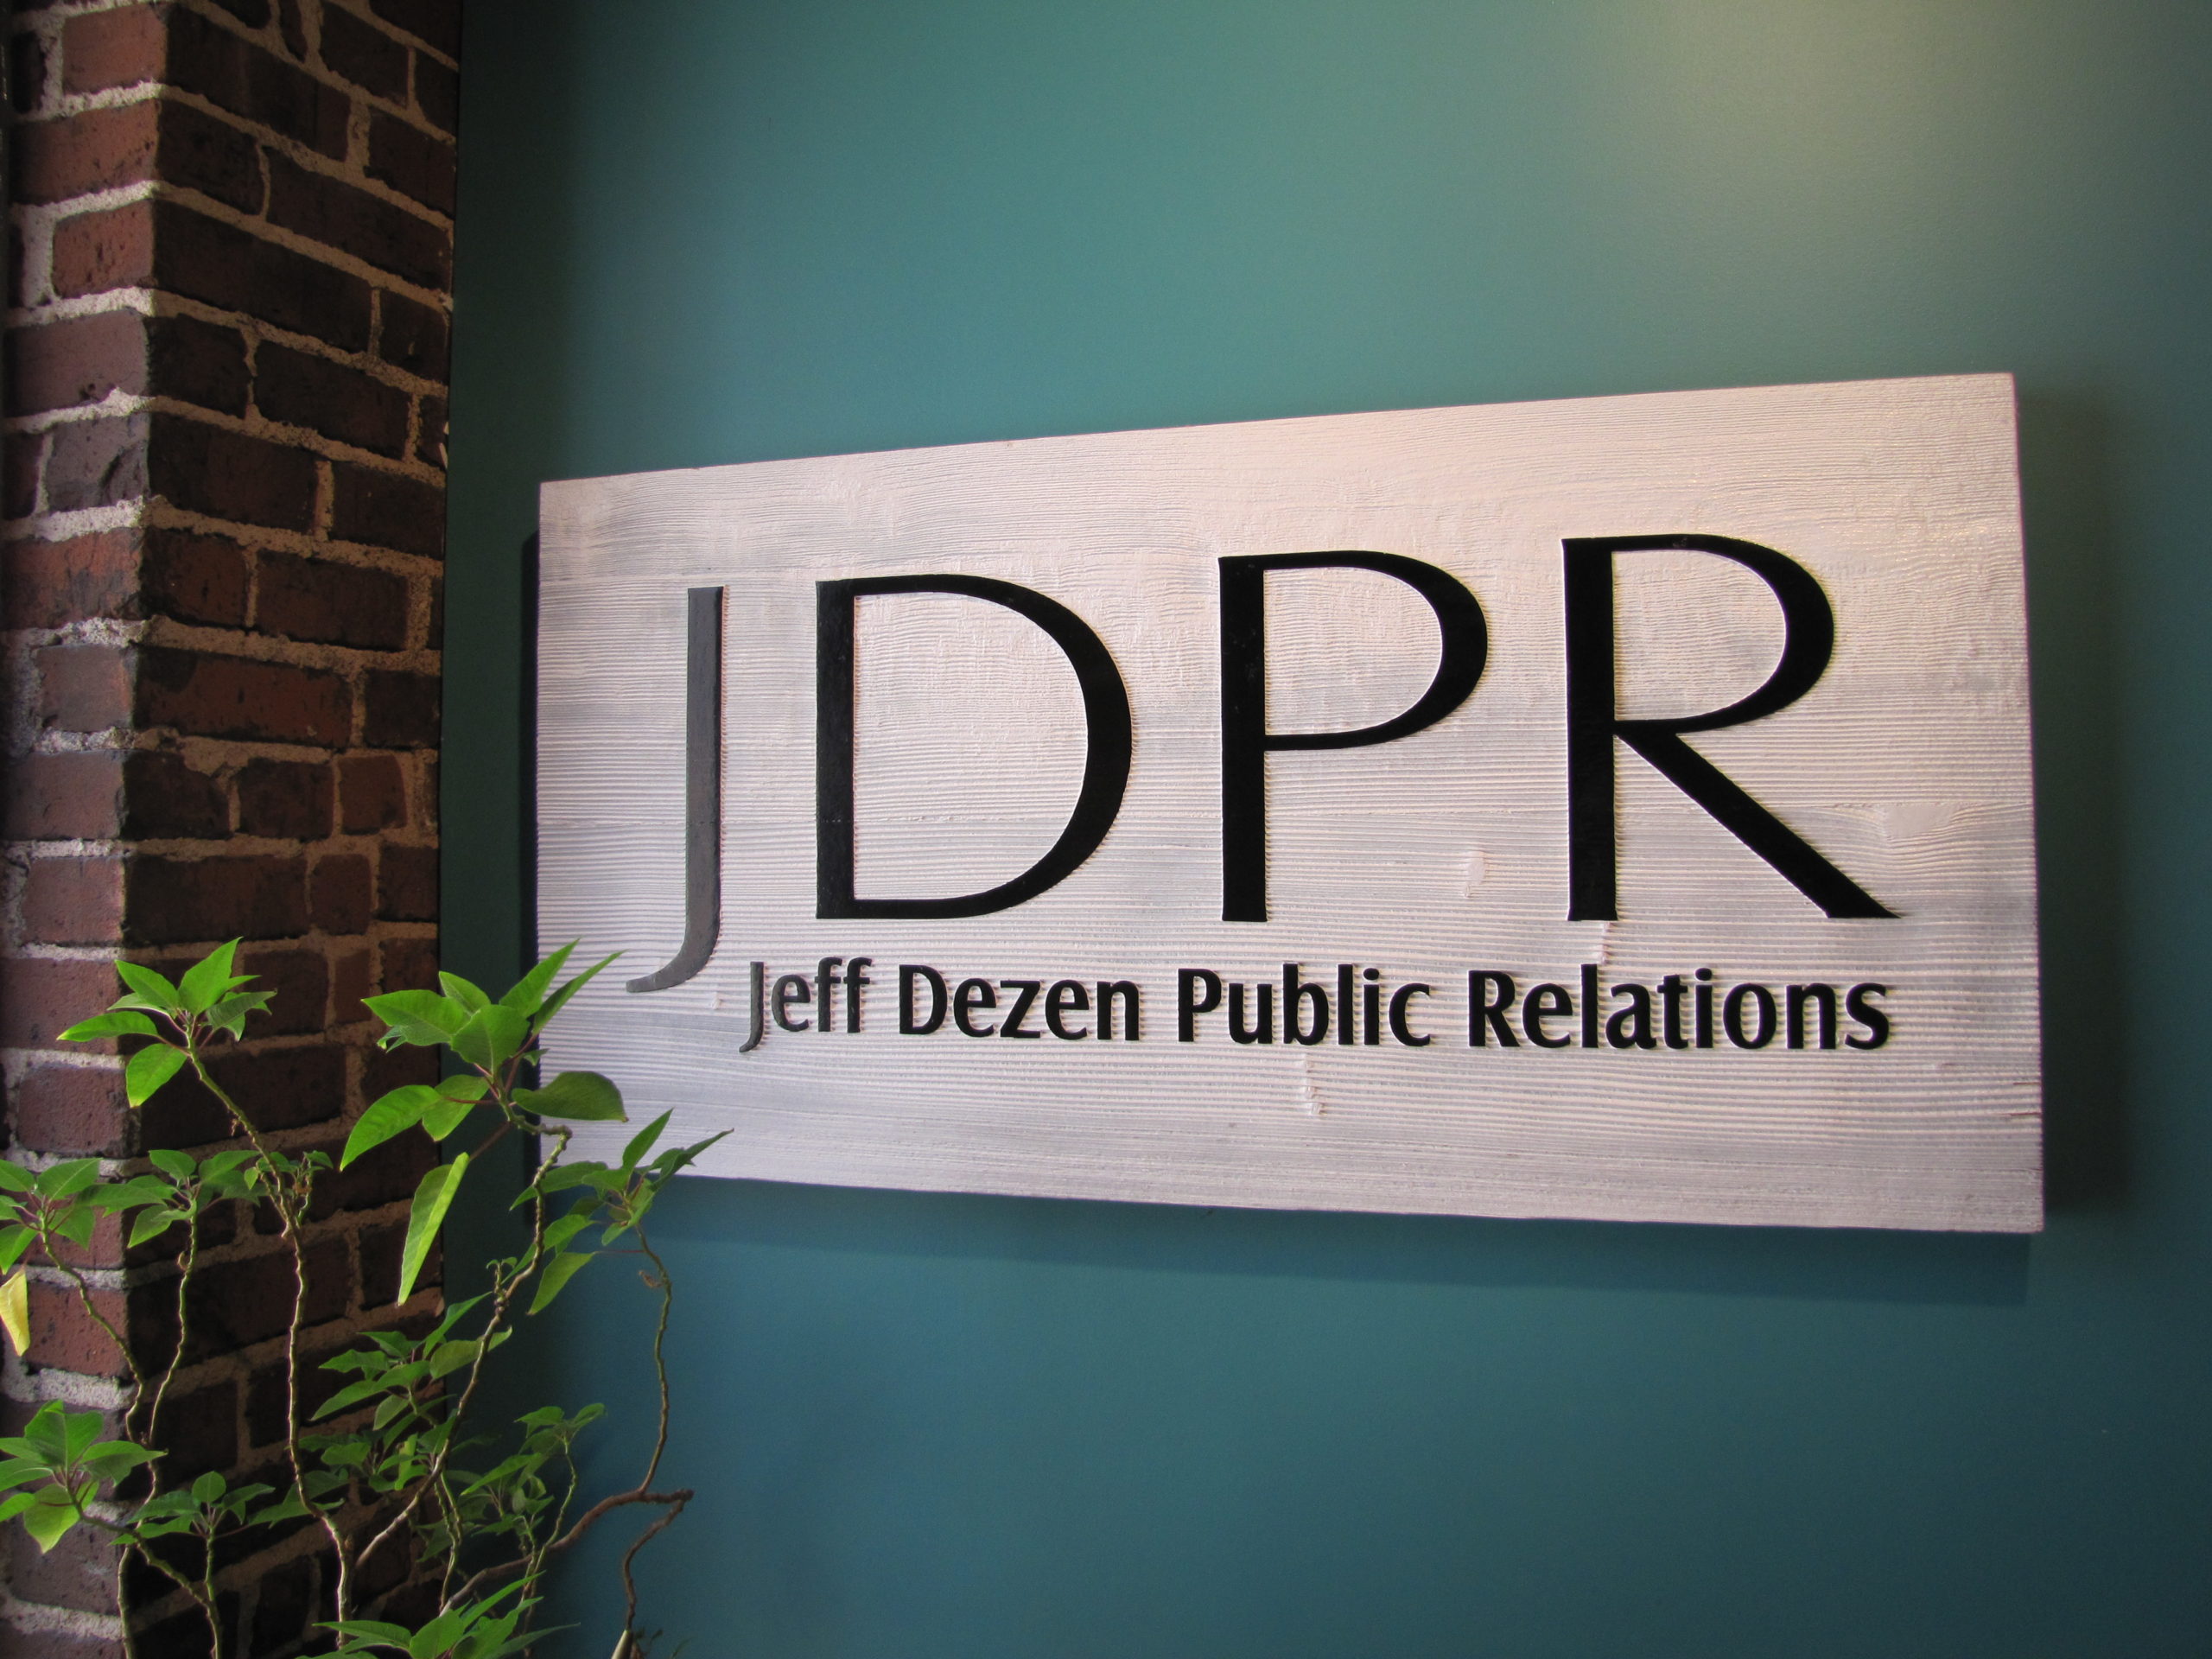 Jeff Dezen Public Relations